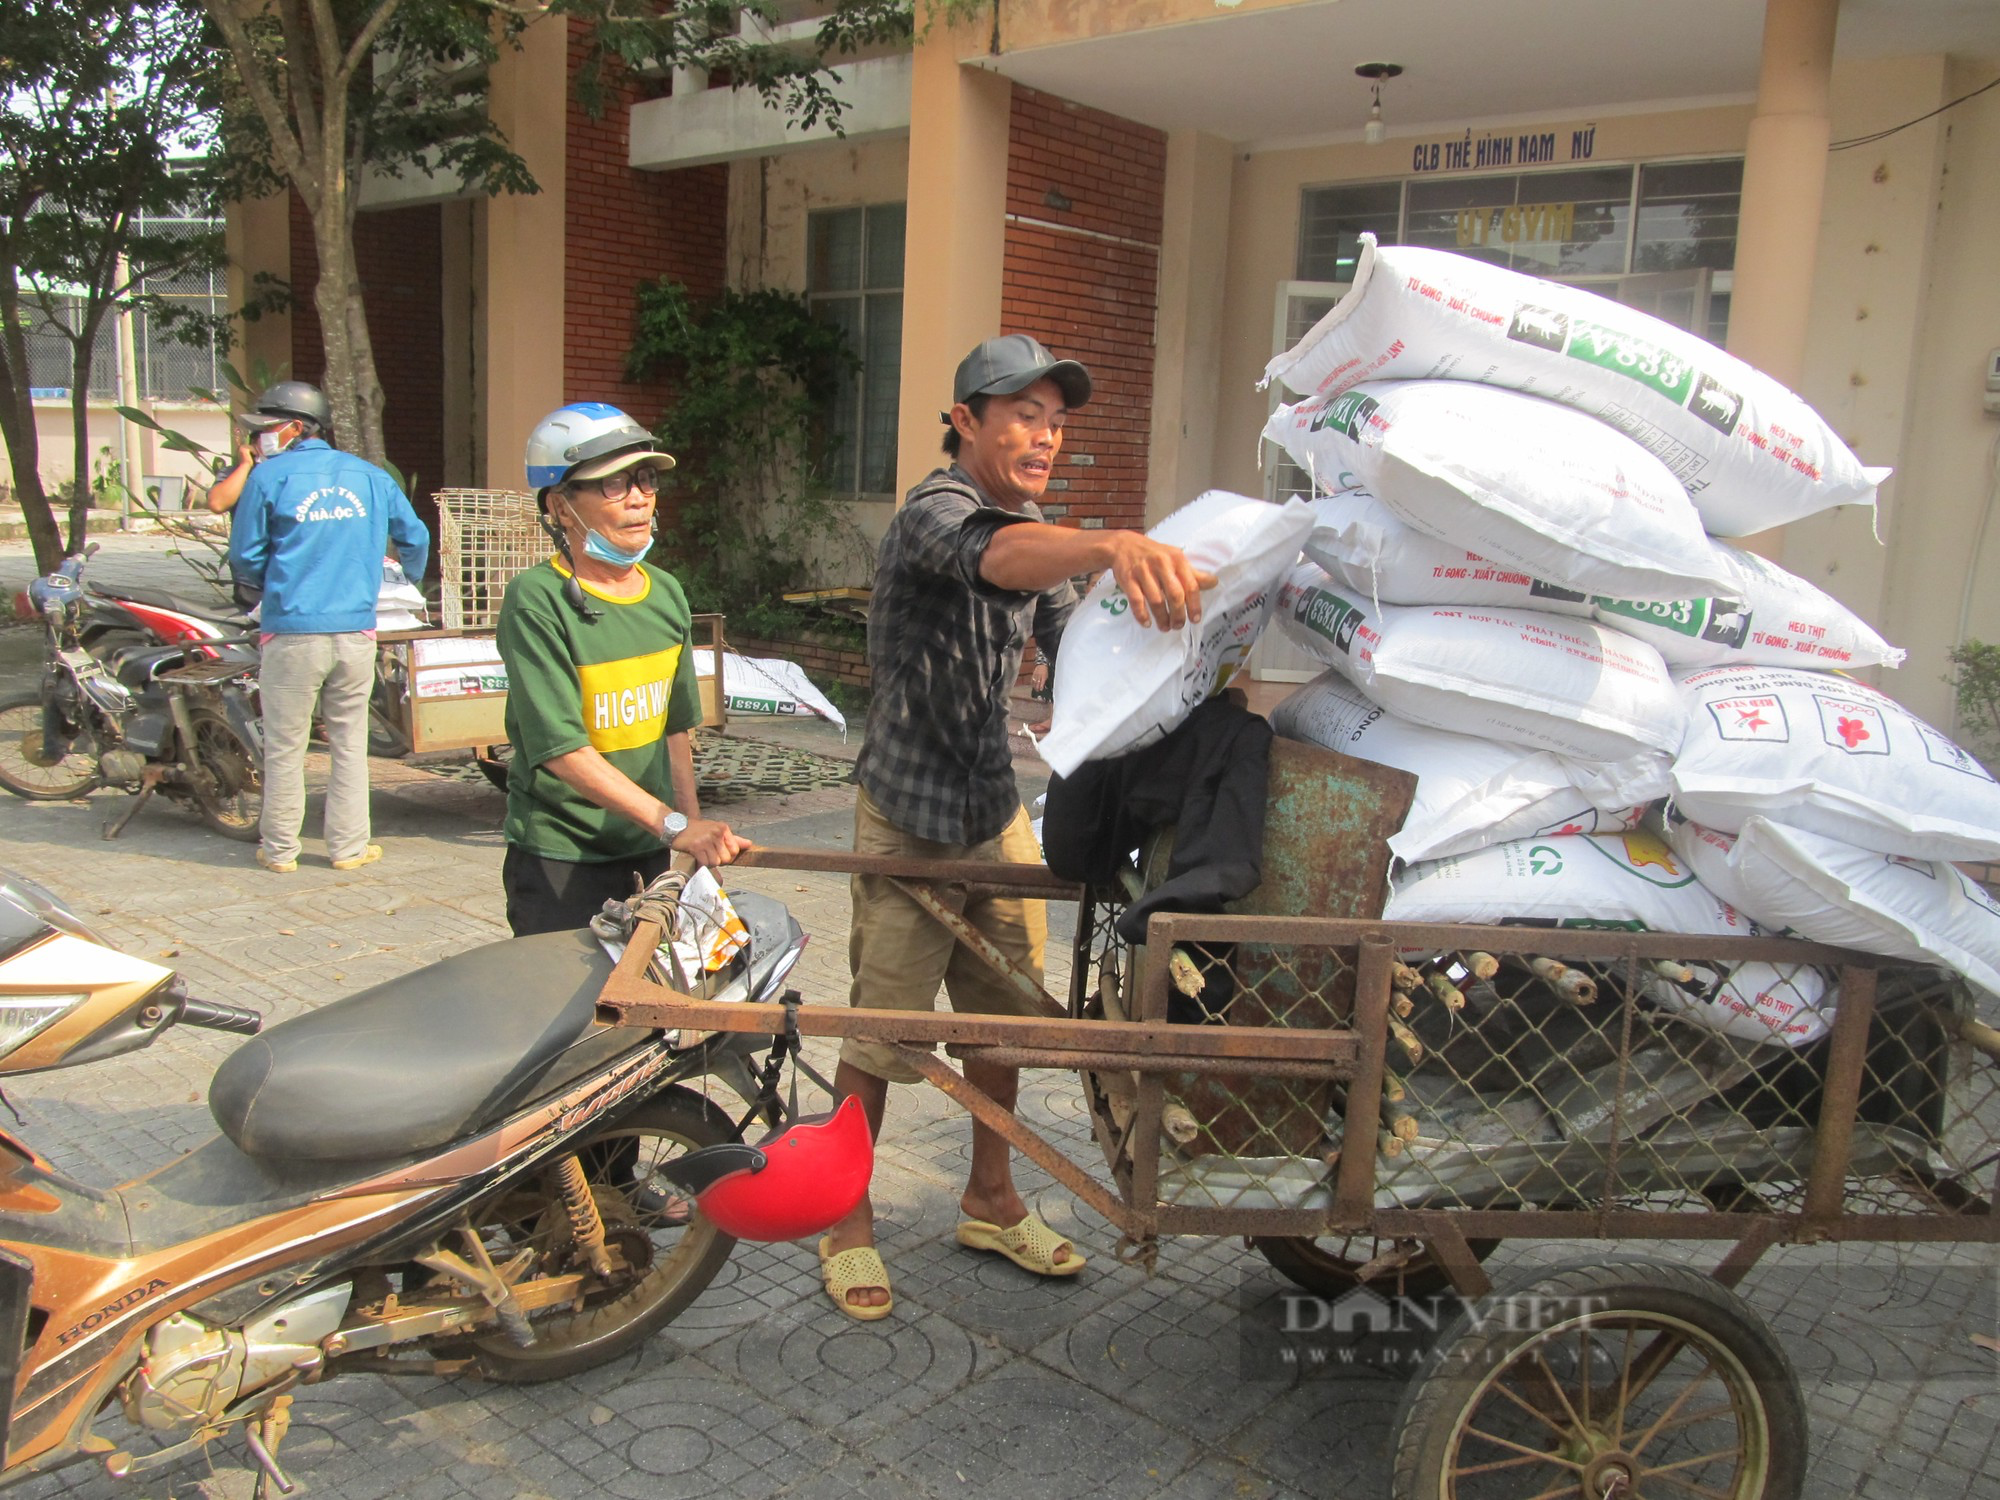 Bà Rịa - Vũng Tàu: Hội Nông dân xã Long Phước tặng bò, dê, heo rừng, phấn đấu giúp 15 hộ thoát nghèo - Ảnh 2.